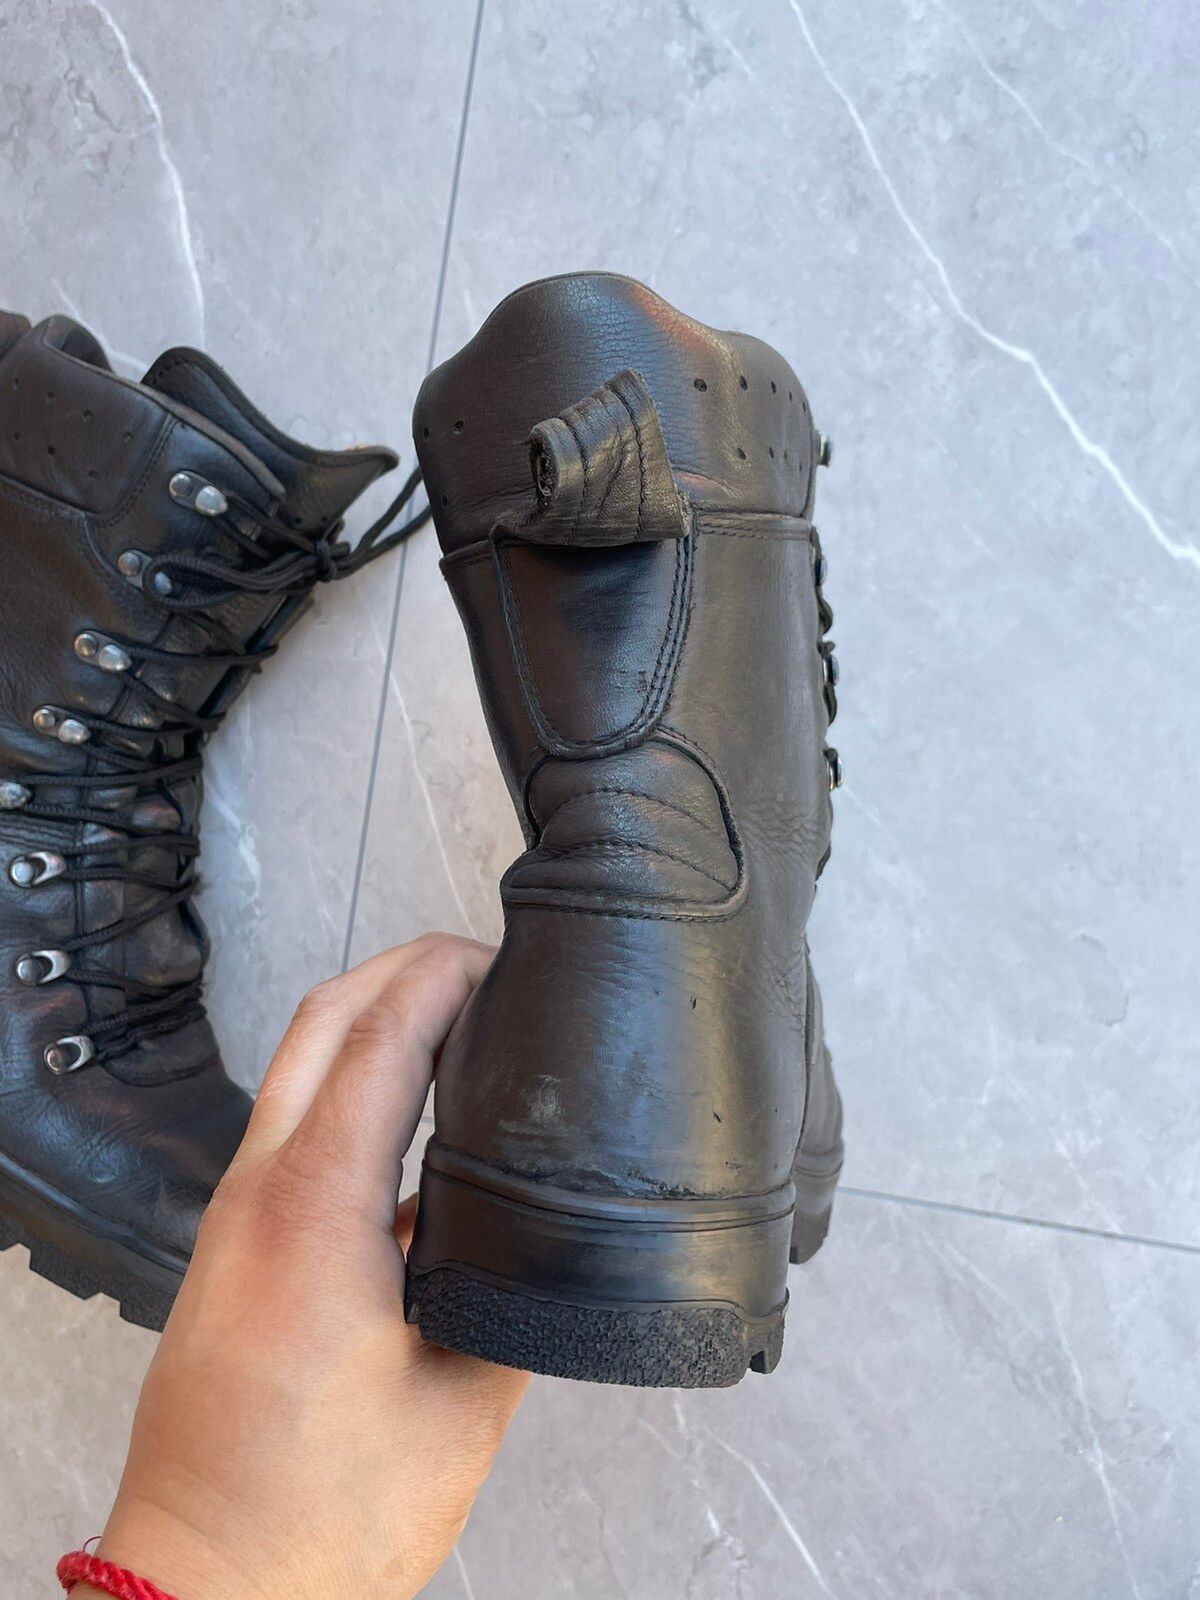 Vintage 1970s Vintage Military Black Leather Combat Boots Size US 9 / EU 42 - 7 Thumbnail